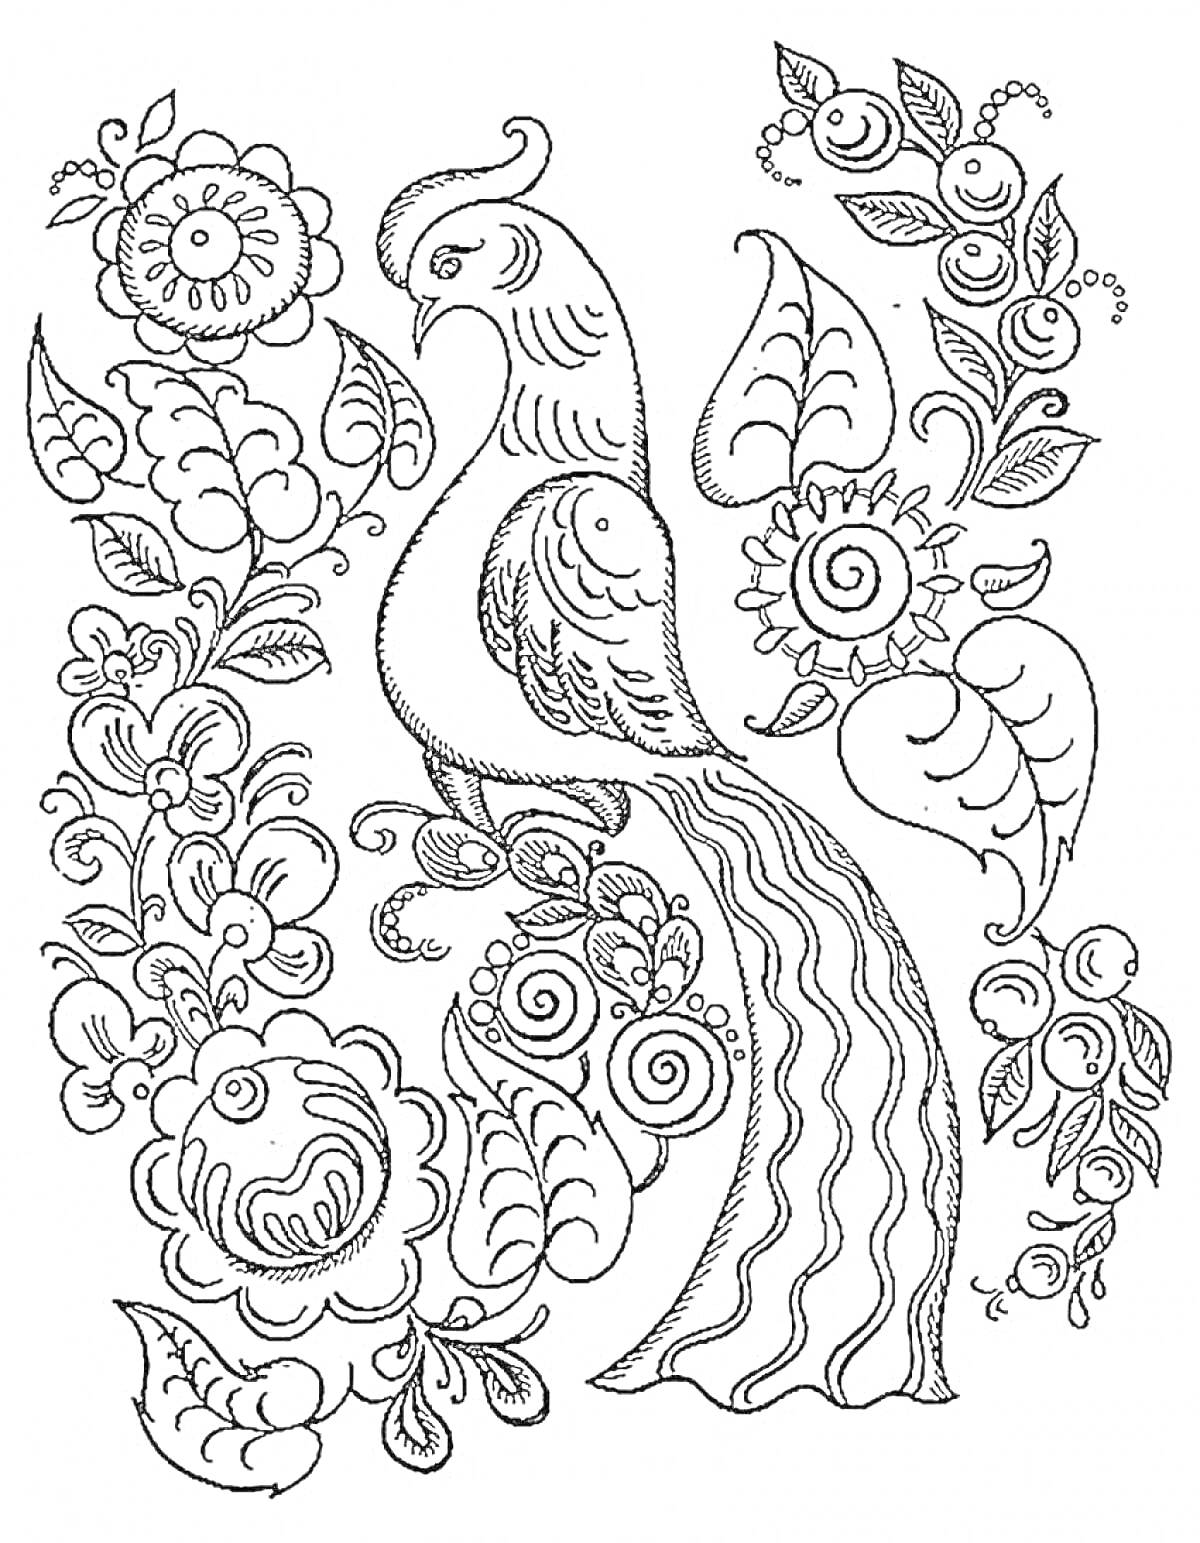 Раскраска Птица среди цветов и листьев в стиле городецкой росписи